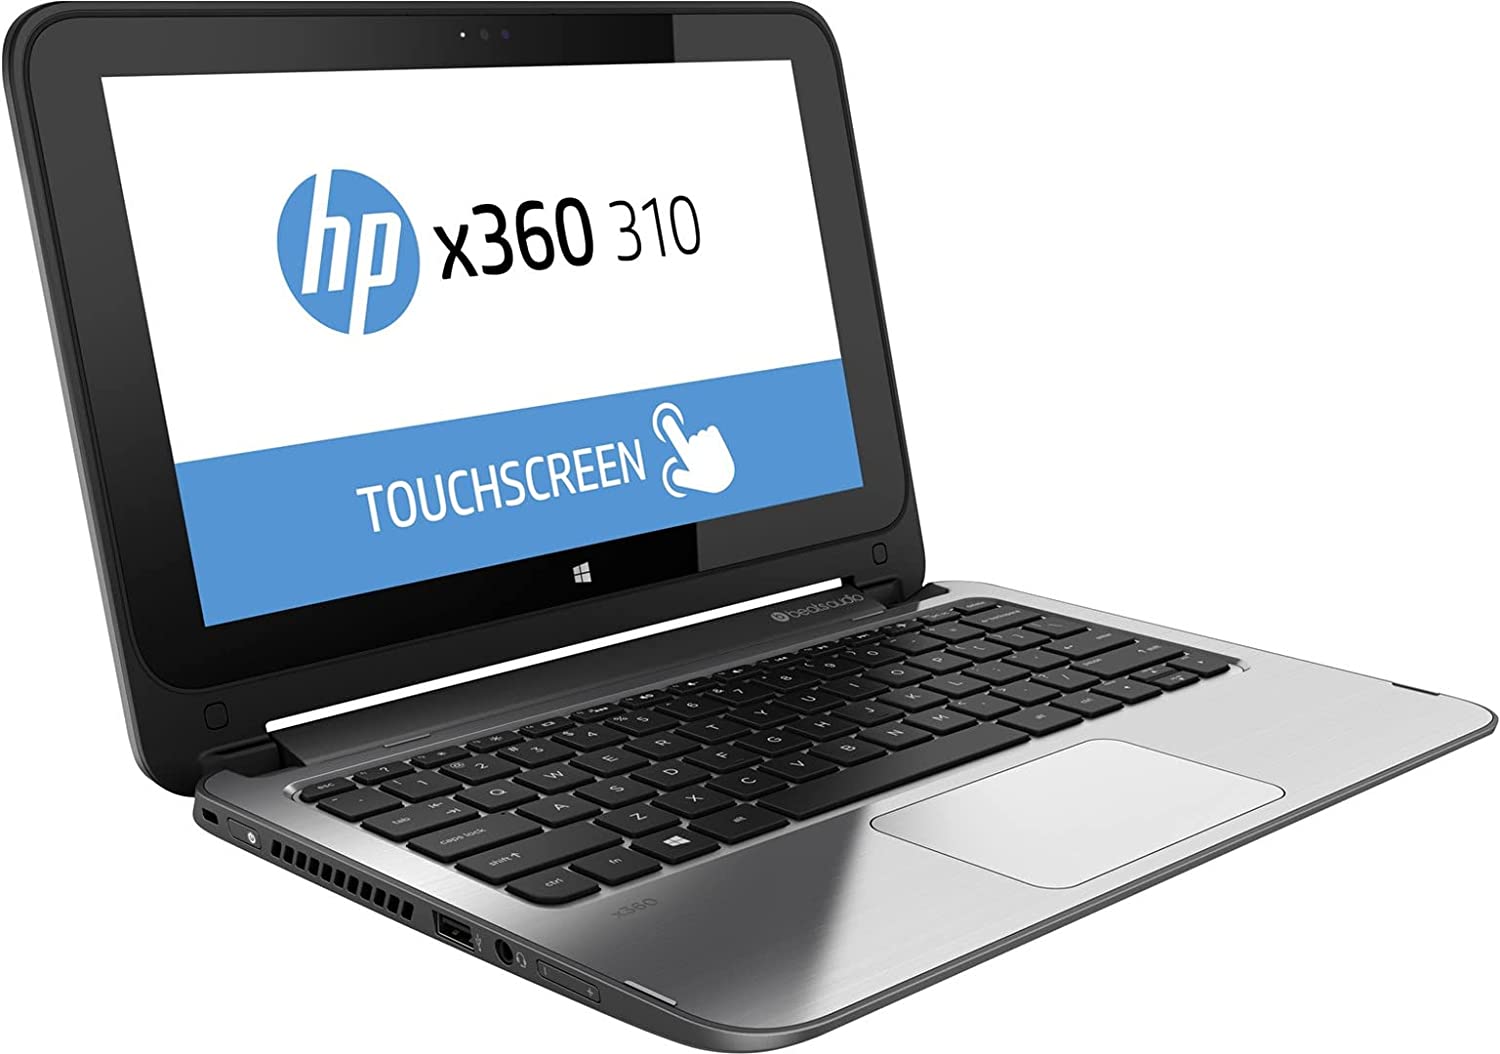 HP x360 yoga Ecran 11 pouces, Ram 04 Go Disque Dur Sata 128 go SSD  P.rocesseur duo core 64 bits, Autonomie 3 heures. Garantie 6 mois. Windows 10 Professionnel, Office 2019, VlC, Adobe Reader, Google Chrome déjà installés